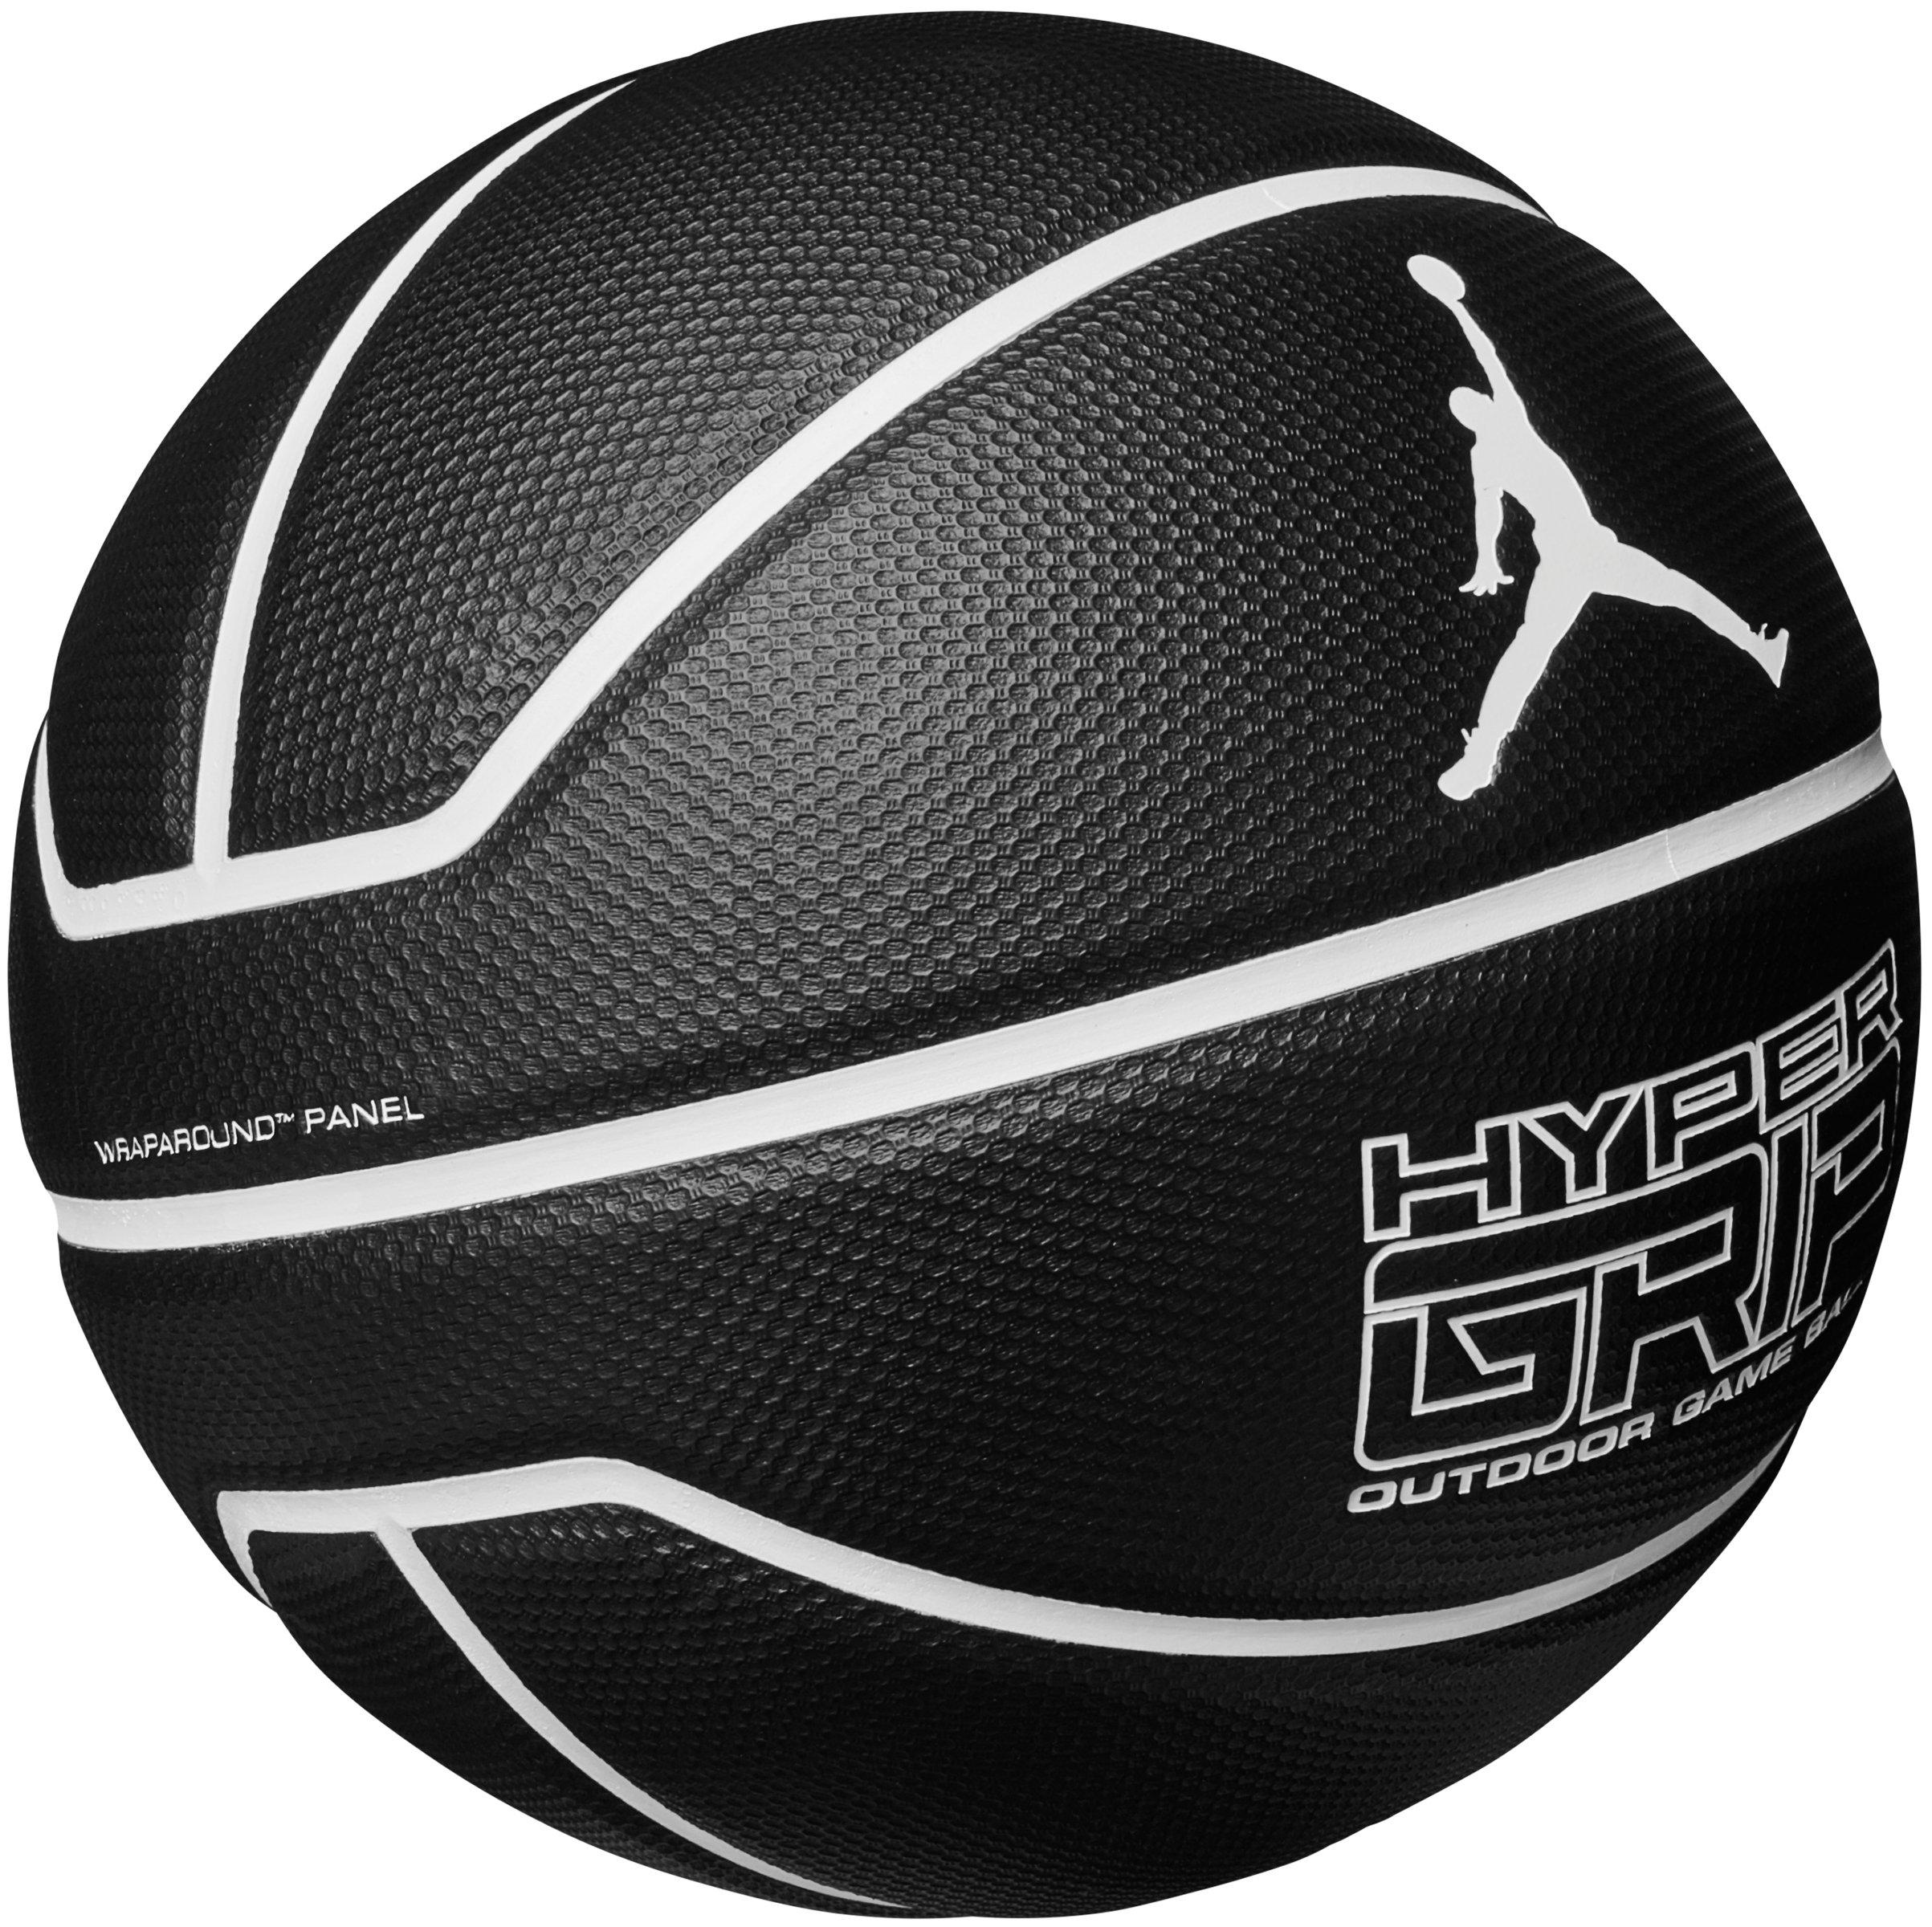 Спортивные магазины баскетбольные мячи. Черный баскетбольный мяч найк. Мяч баскетбольный Jordan Hyper Grip 4p 07. Мяч Nike Jordan Hyper Grip.